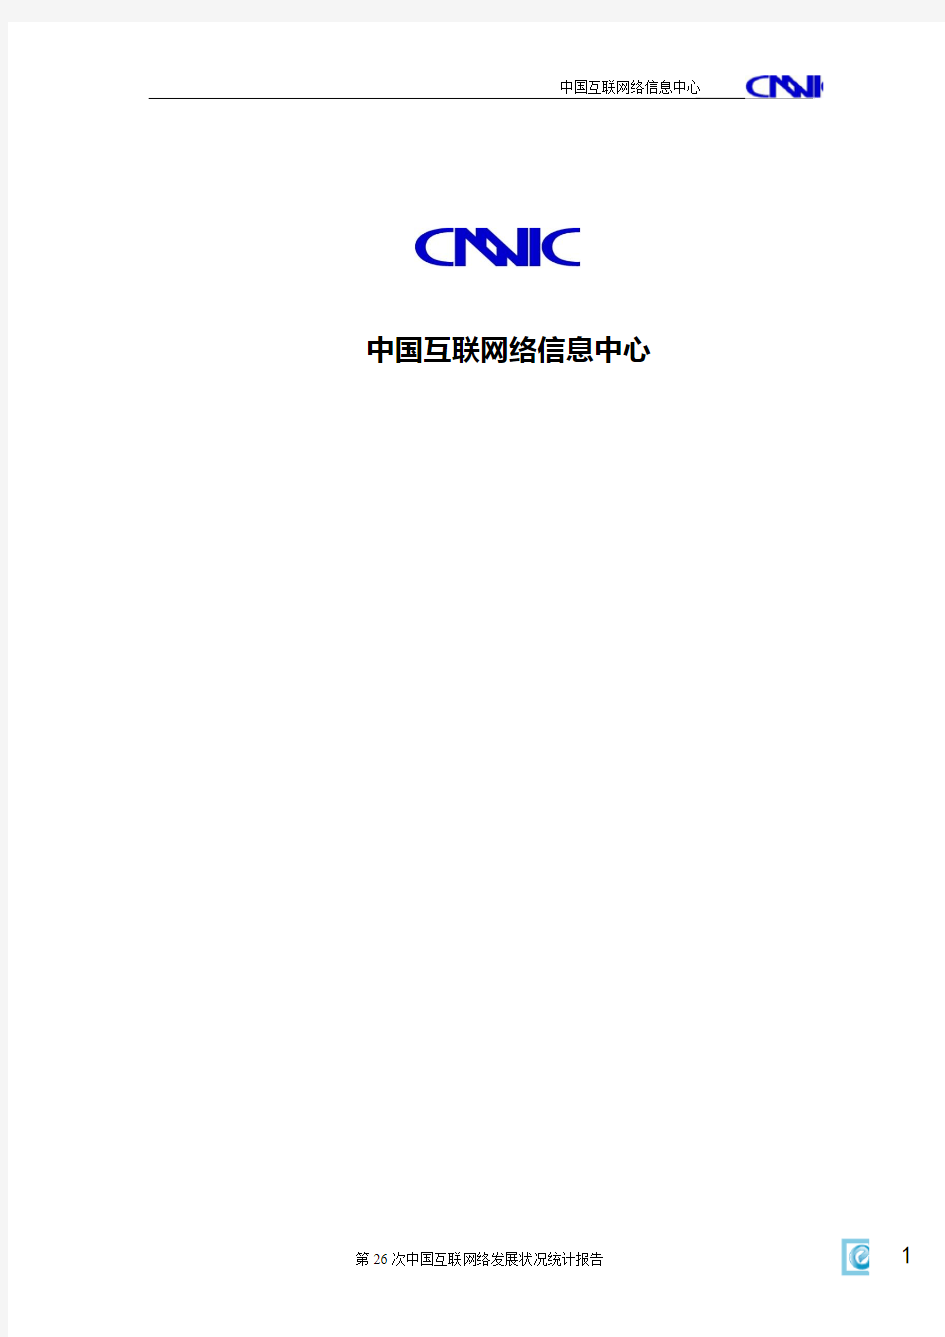 2010年中国互联网络发展状况统计报告